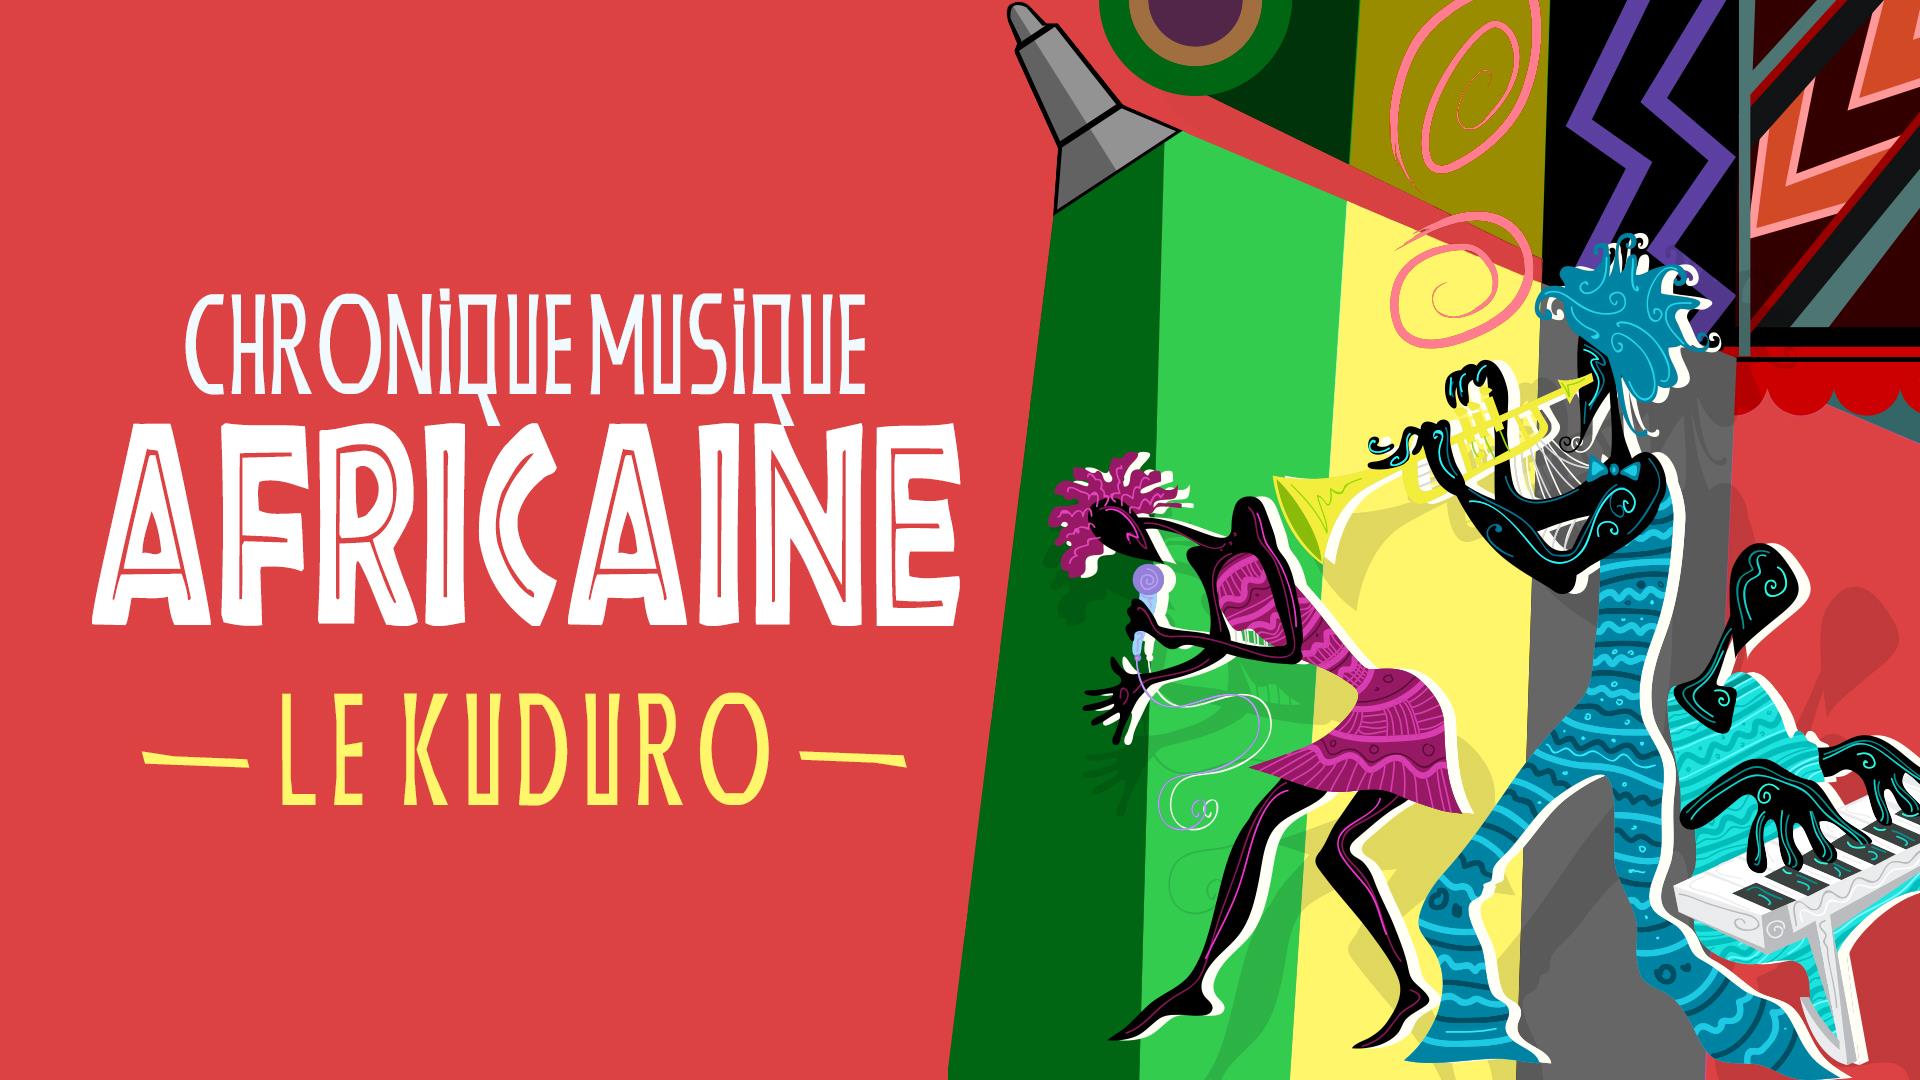 Chronique musique africaine  :  le kuduro 
Chronique musique africaine  :  le kuduro